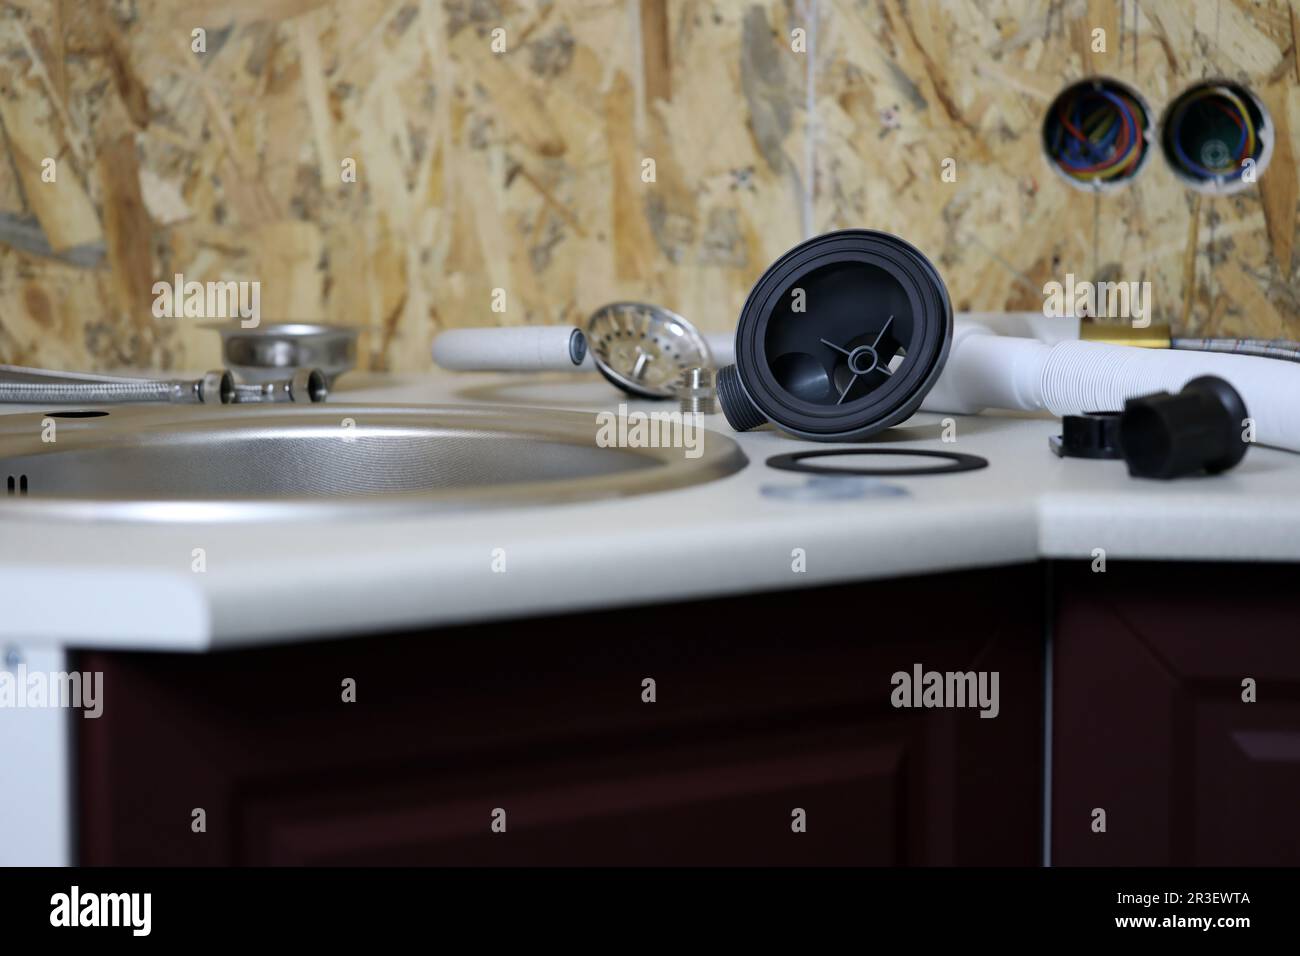 Plombiers outils et robinet d'eau prêts à être installés près de l'évier sur le plan de travail dans la cuisine. Raccords pour l'installation du robinet d'eau pour l'évier de cuisine Banque D'Images